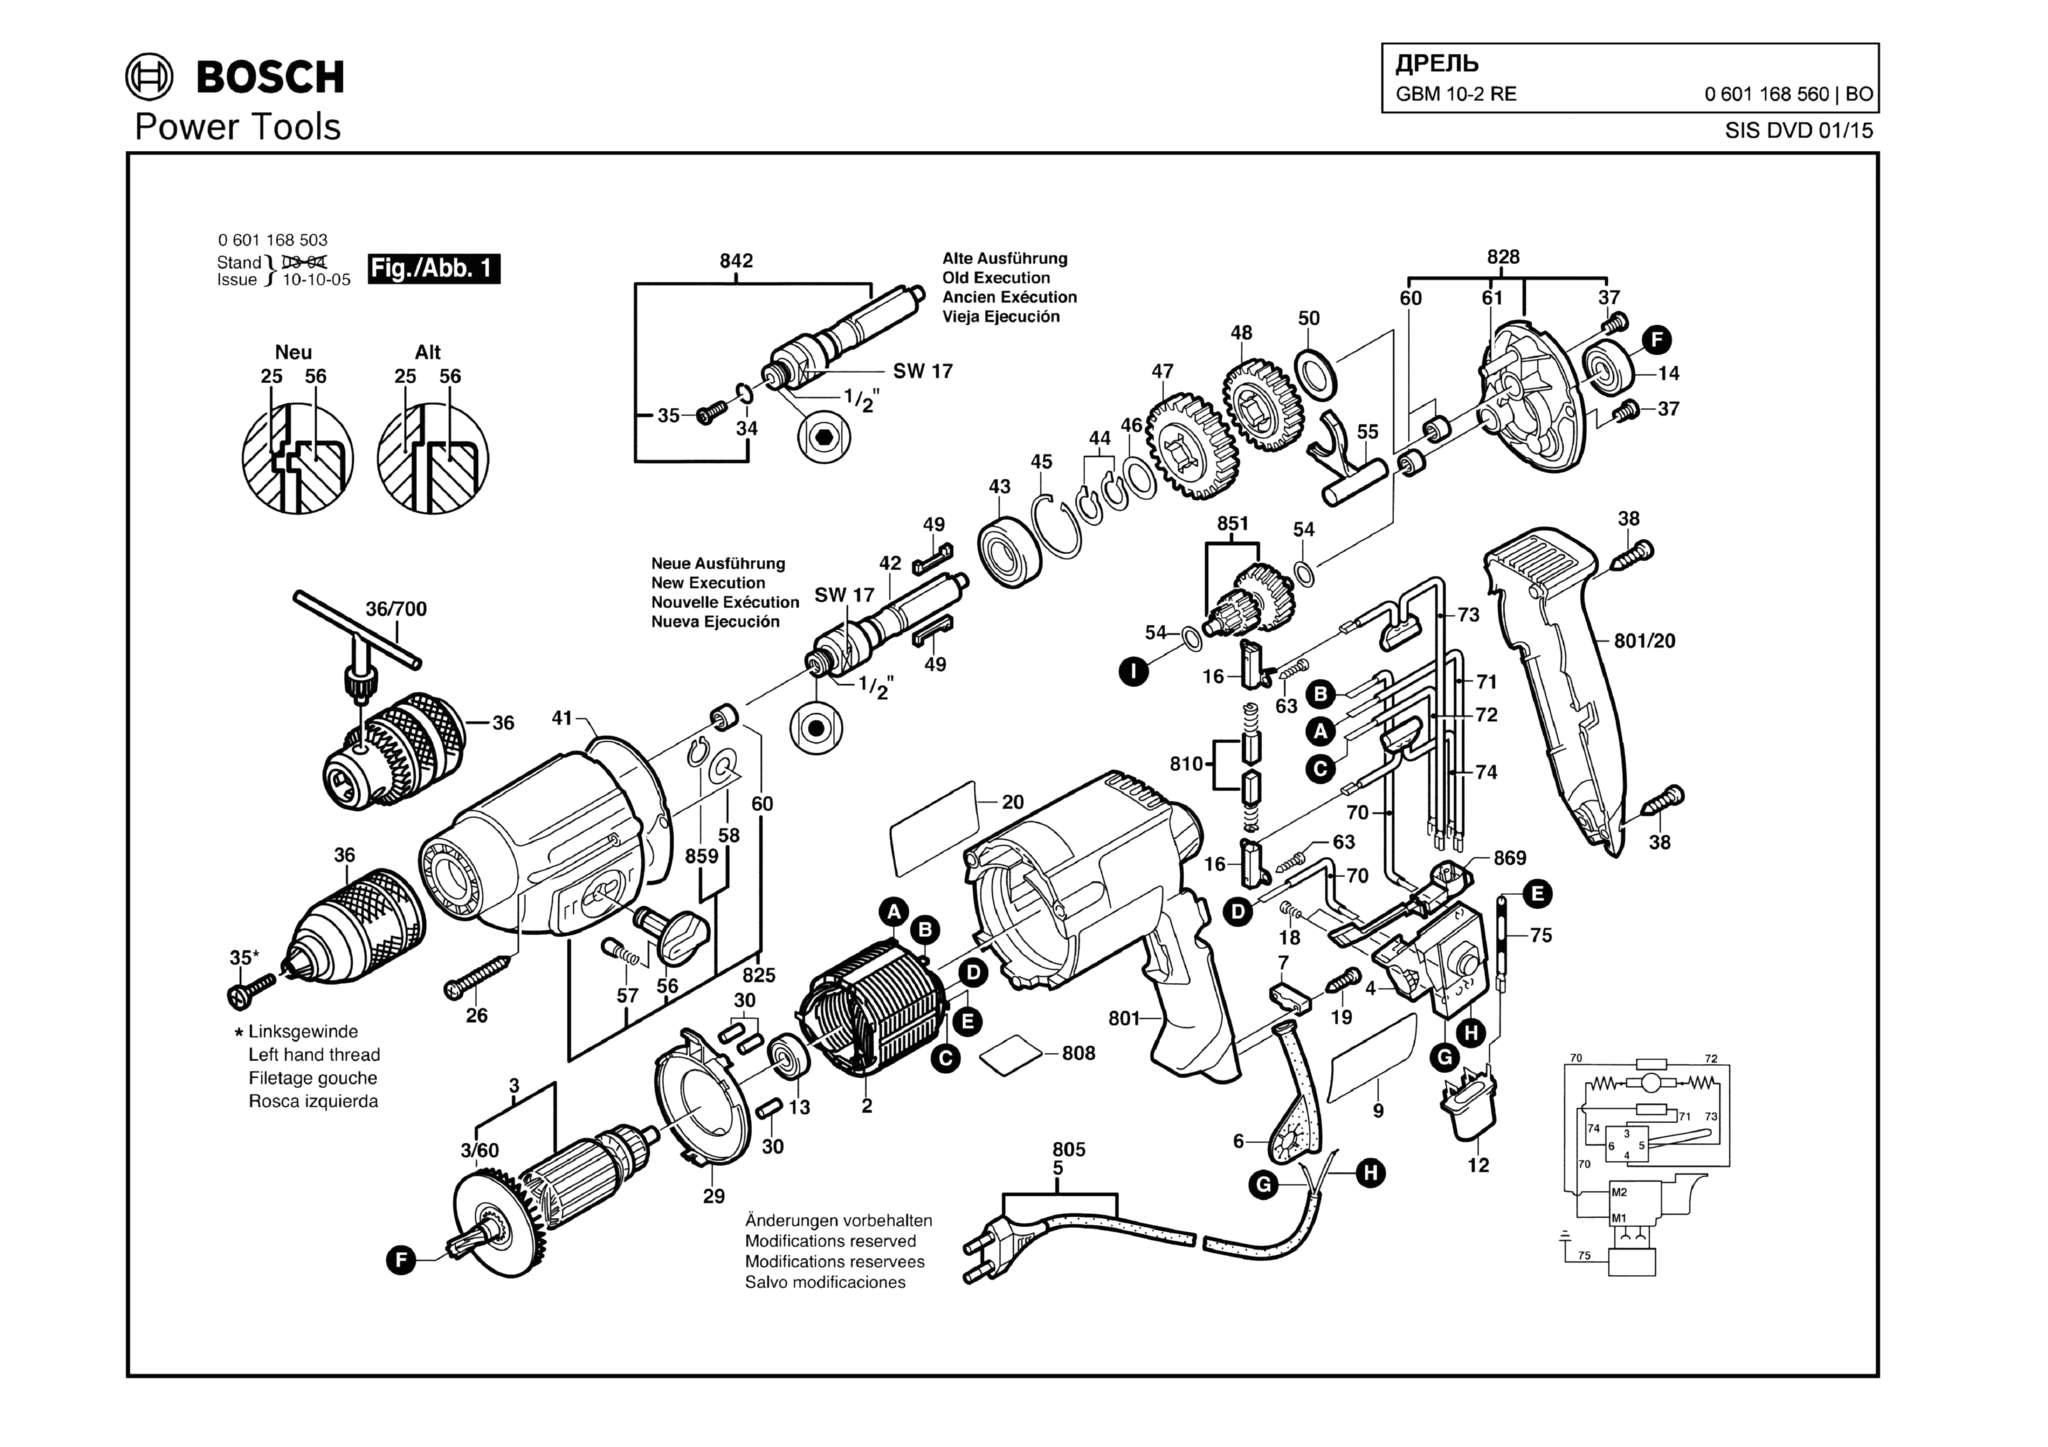 Запчасти, схема и деталировка Bosch GBM 10-2 RE (ТИП 0601168560)